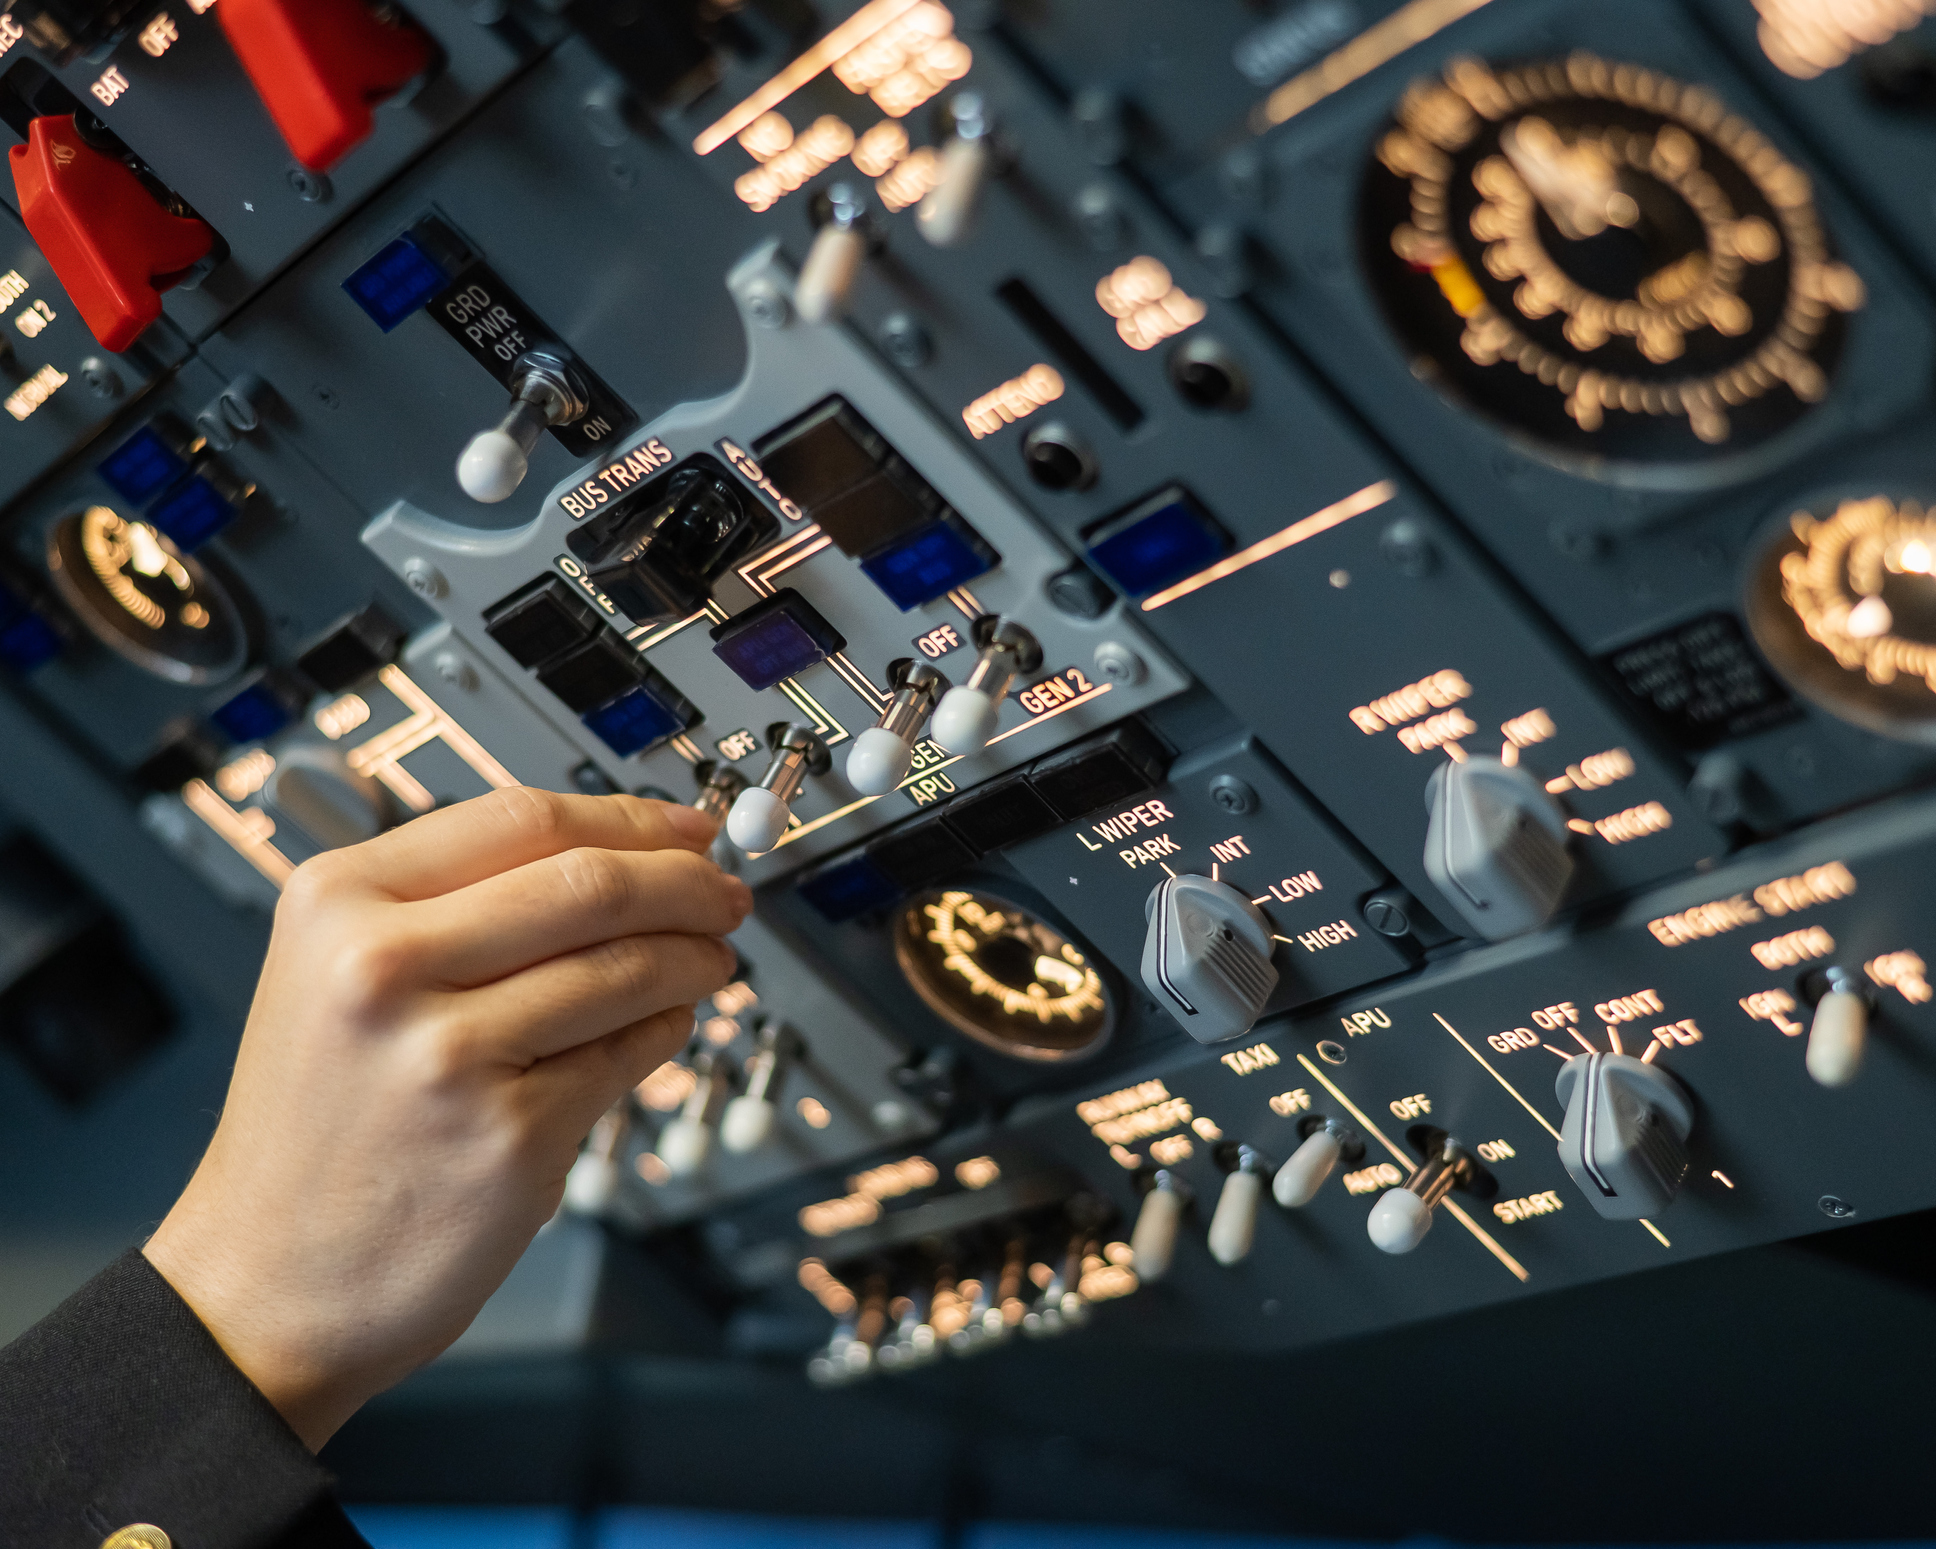 En hånd betjener en lille kontakt på et stort kontrolpanel med talrige målere og håndtag i cockpittet.